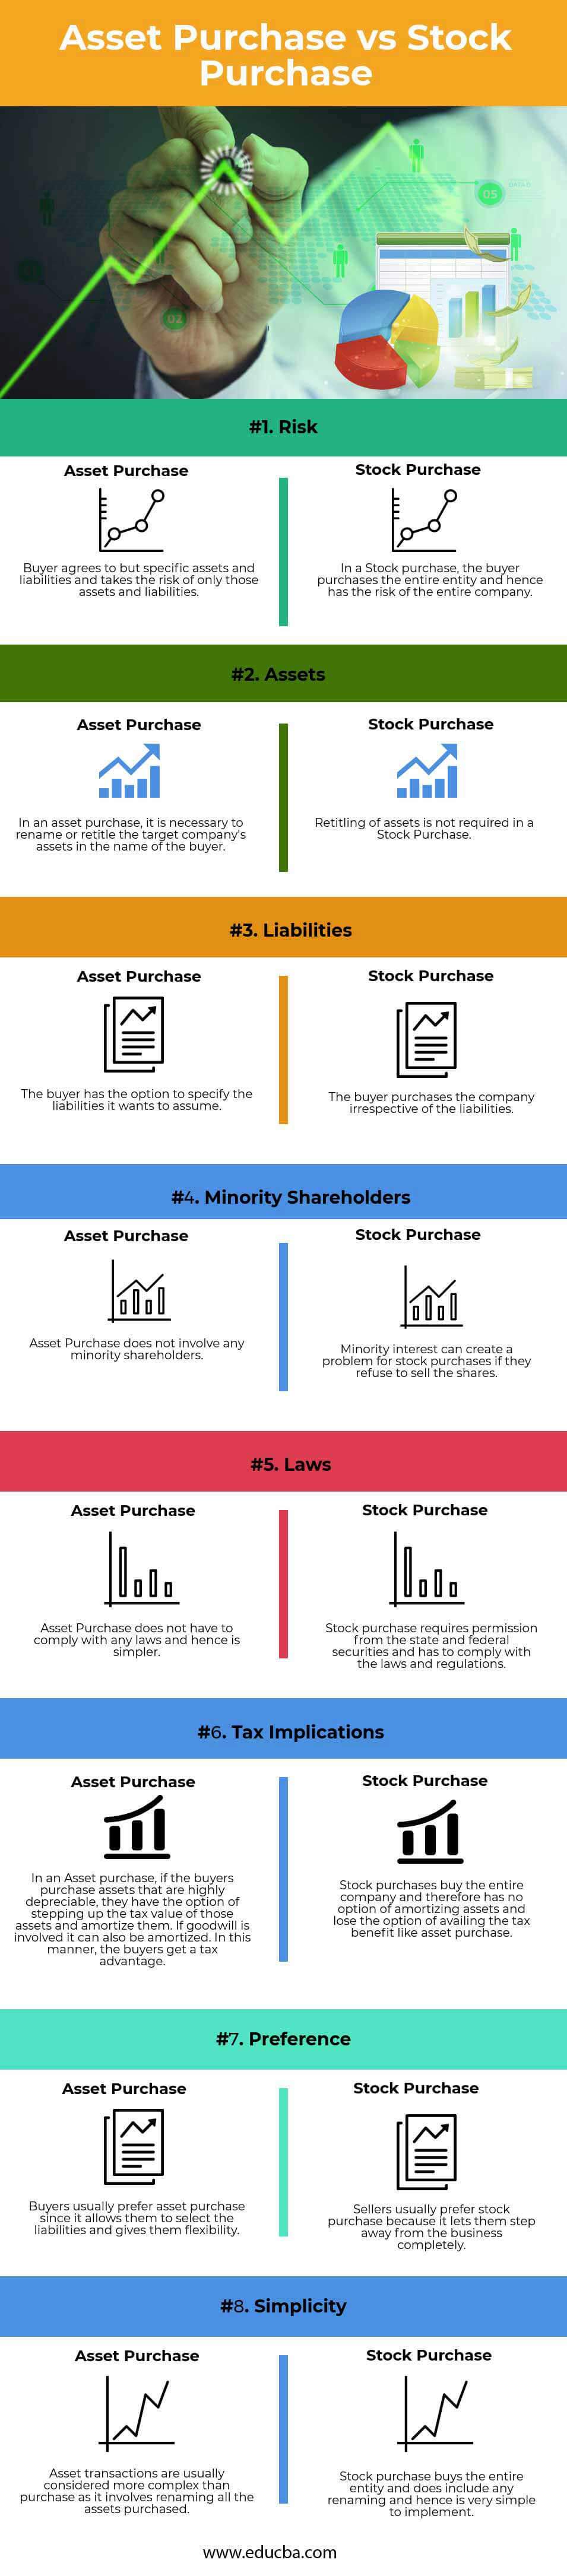 Comprar activos versus comprar acciones